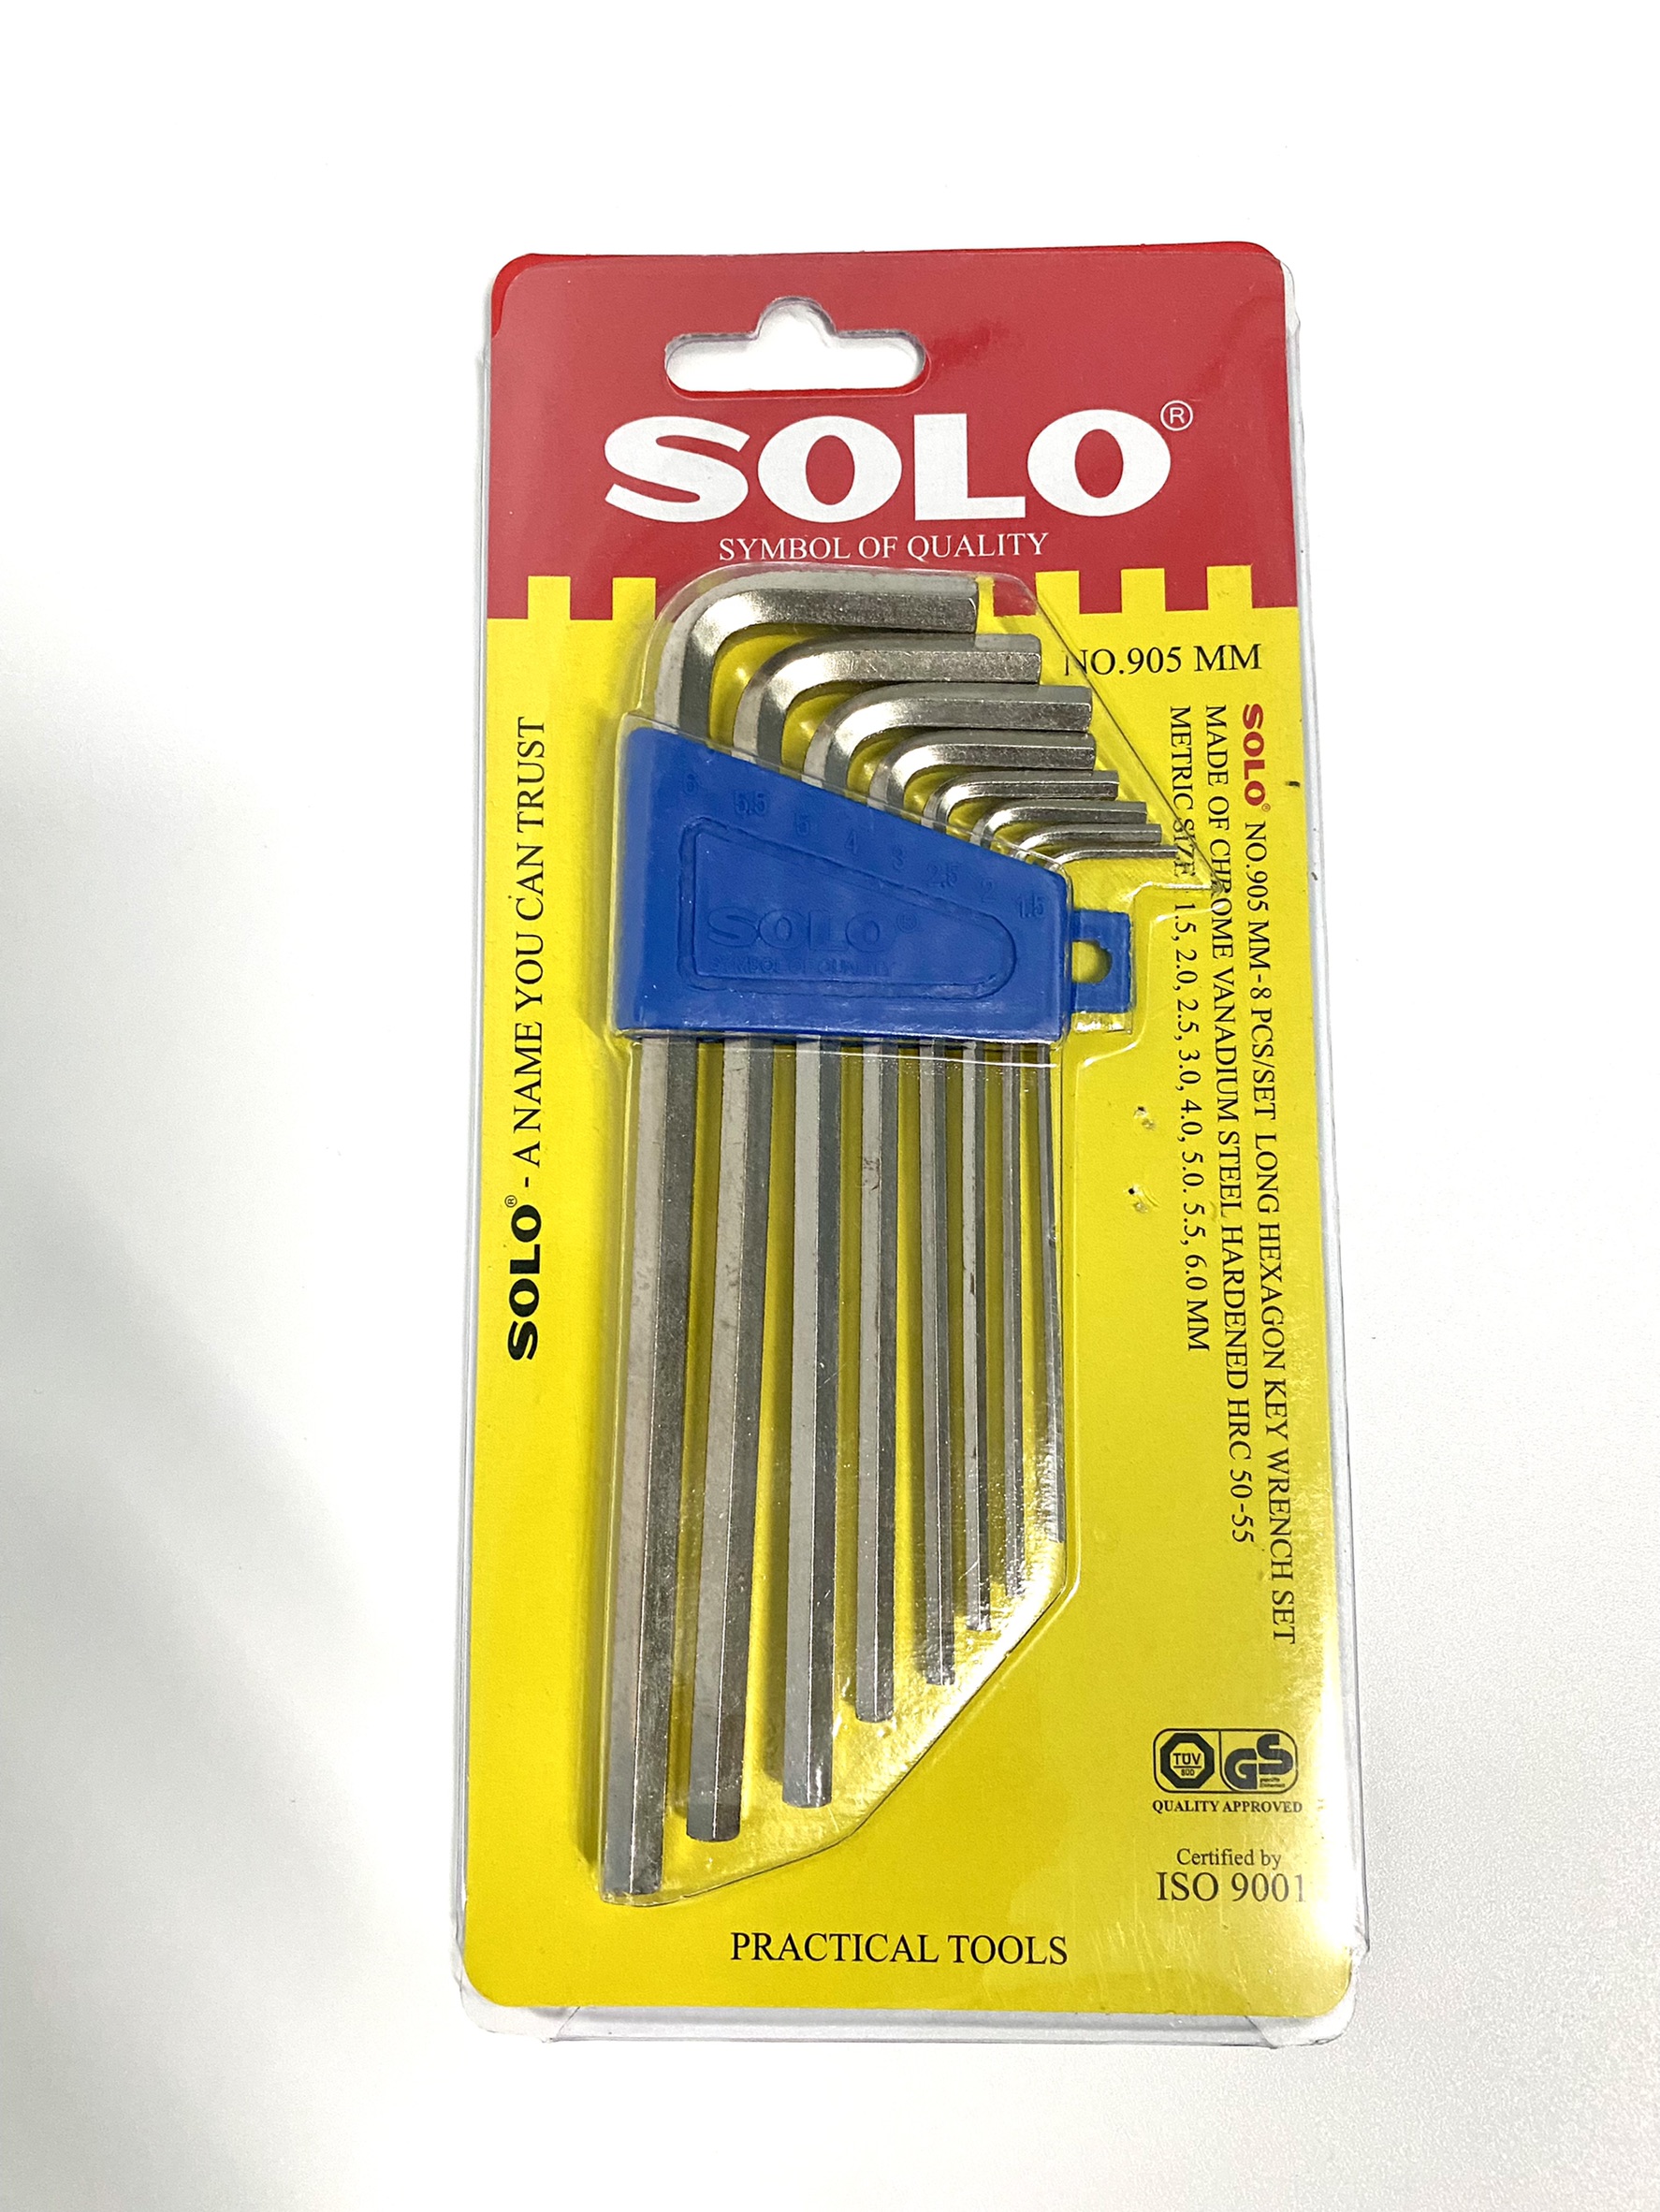 SOLO ของแท้ ประแจหกเหลี่ยม หกเหลี่ยม กุญแจหกเหลี่ยม ชุดประแจหกเหลี่ยม 8ตัว/ชุด NO.905(ยาว)